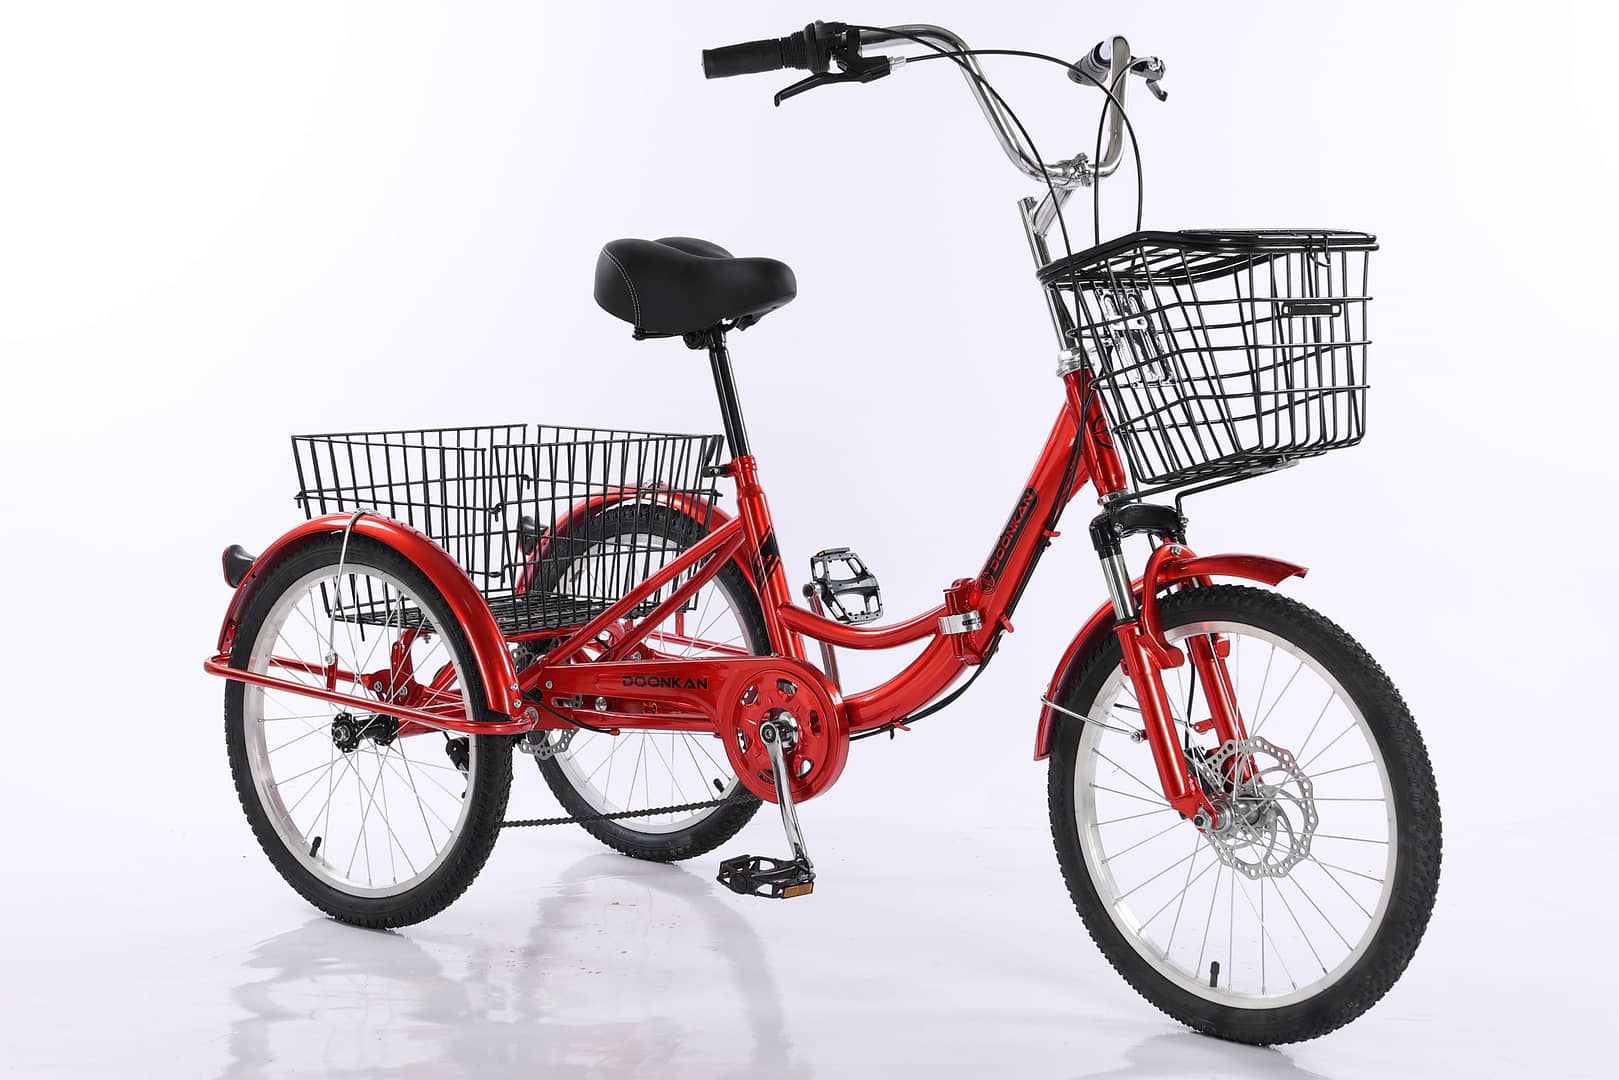 Трицикл Трайк Дункан Doonkan trike 20 трехколесный складной велосипед для взрослых и подростков ДЦП инвалиду пенсионеру родителям на дачу